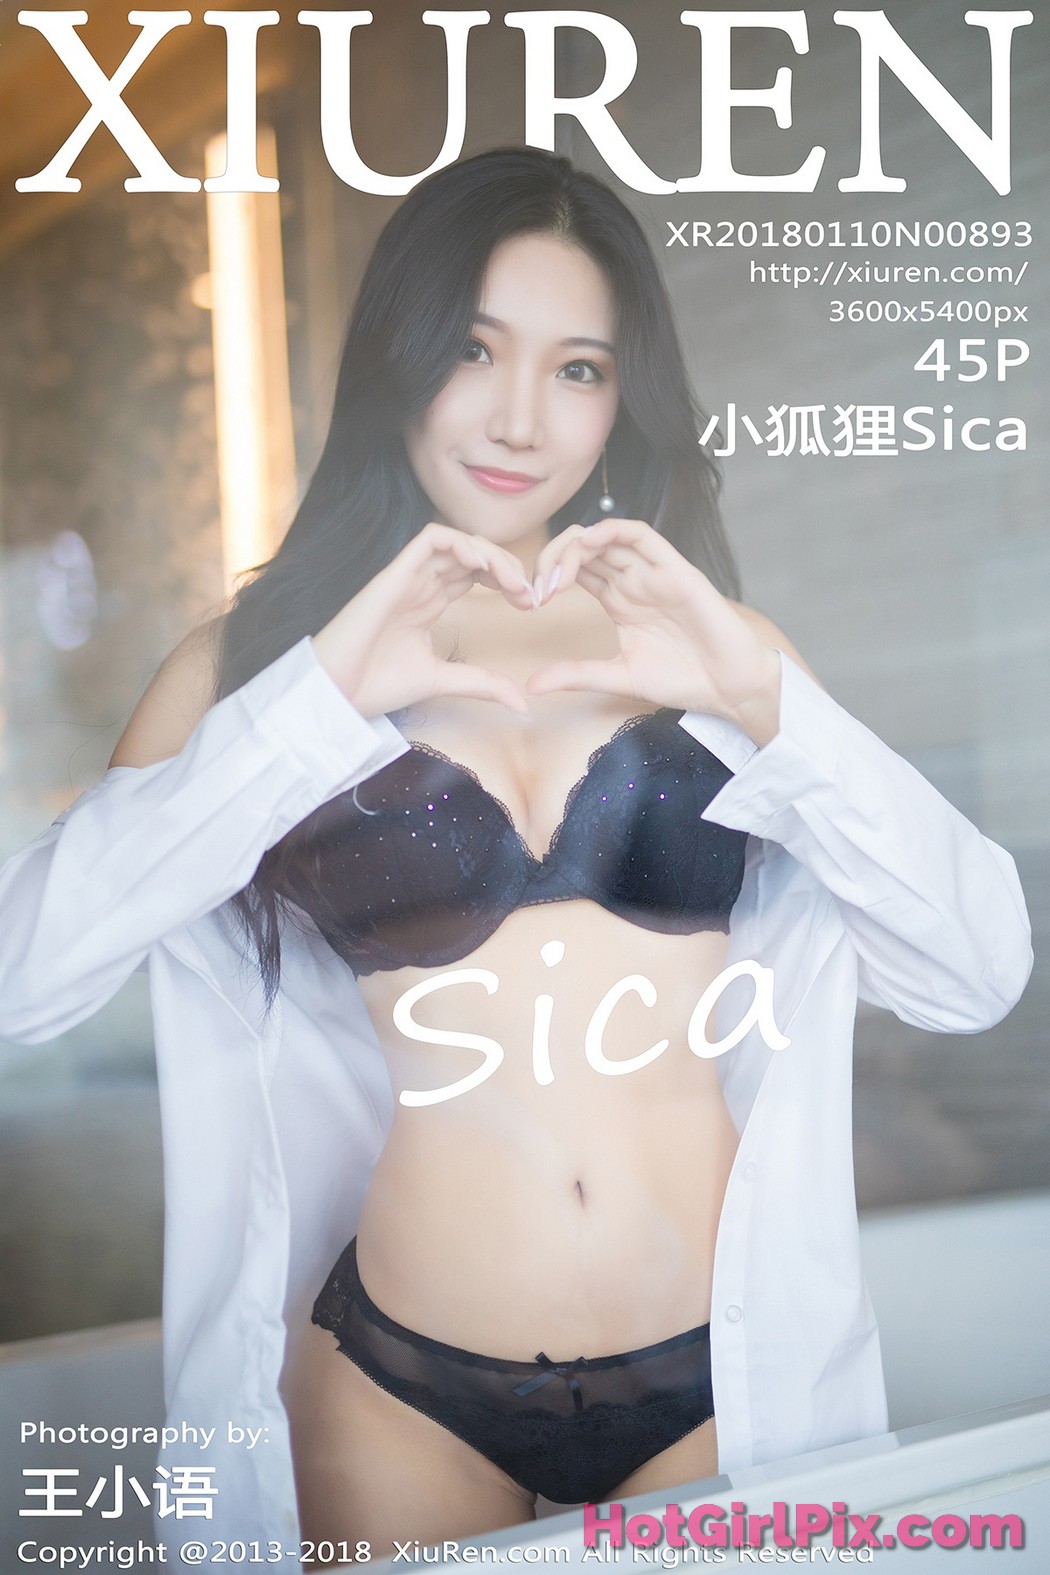 [XIUREN] No.893 Xiao Hu Li 小狐狸Sica Cover Photo